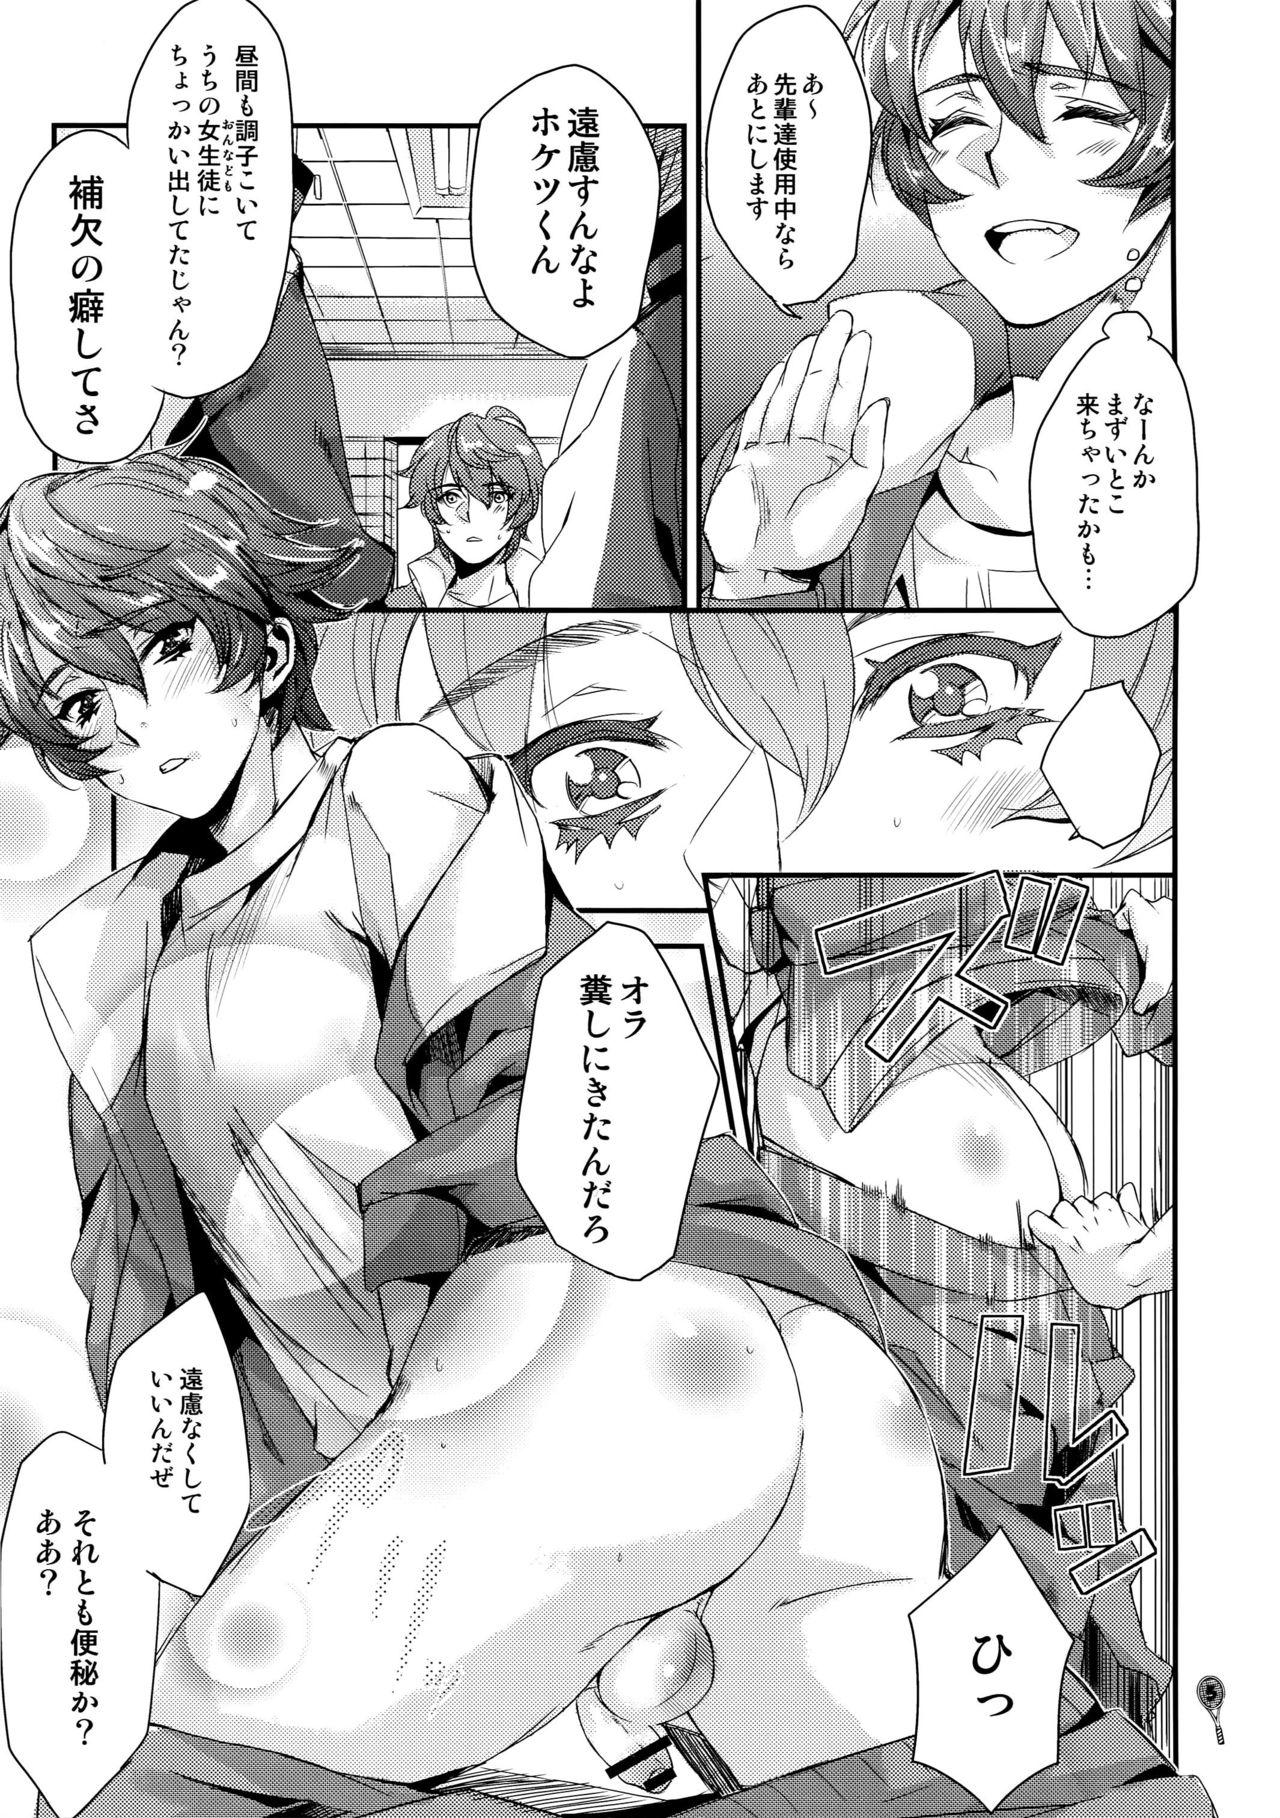 Amigos Hoketsu no Kuse ni Namaiki da - Prince of tennis Bedroom - Page 4